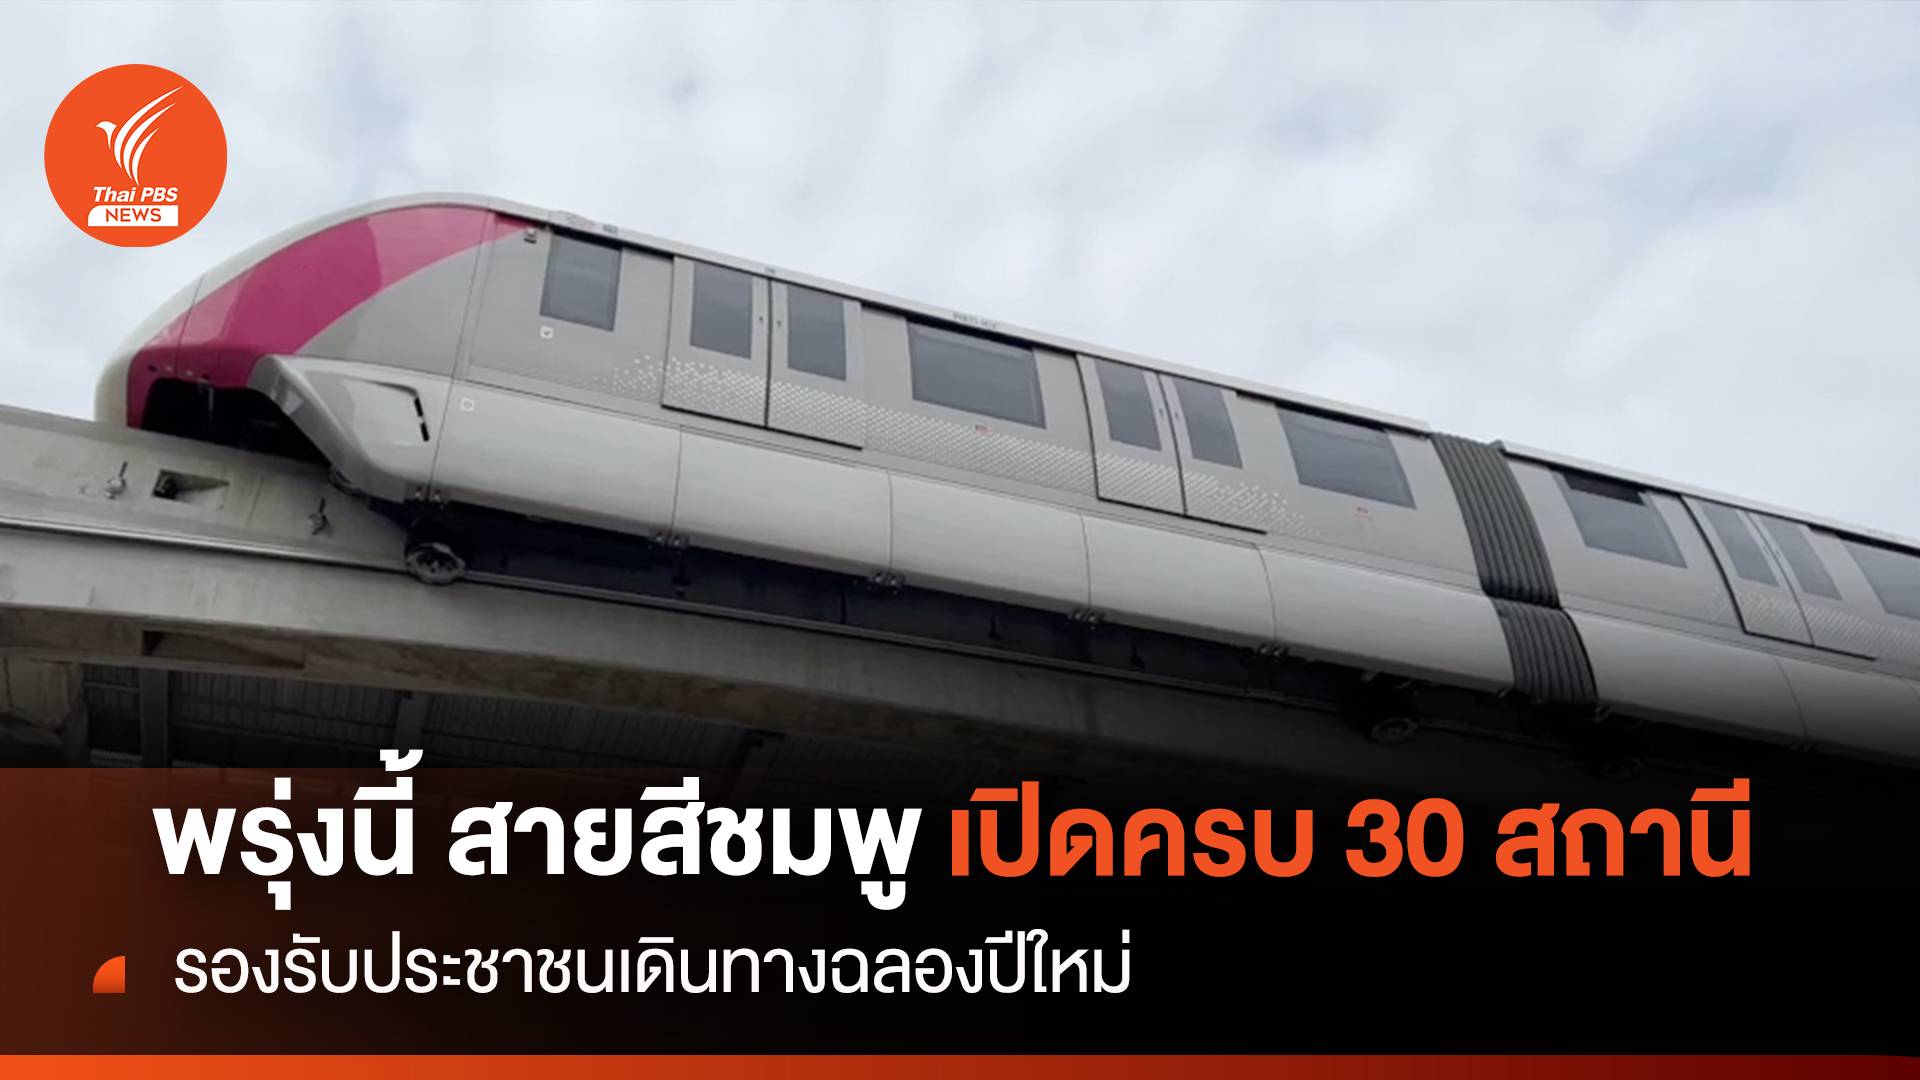 พรุ่งนี้ สายสีชมพู เปิดครบ 30 สถานี รองรับคนเดินทางฉลองปีใหม่